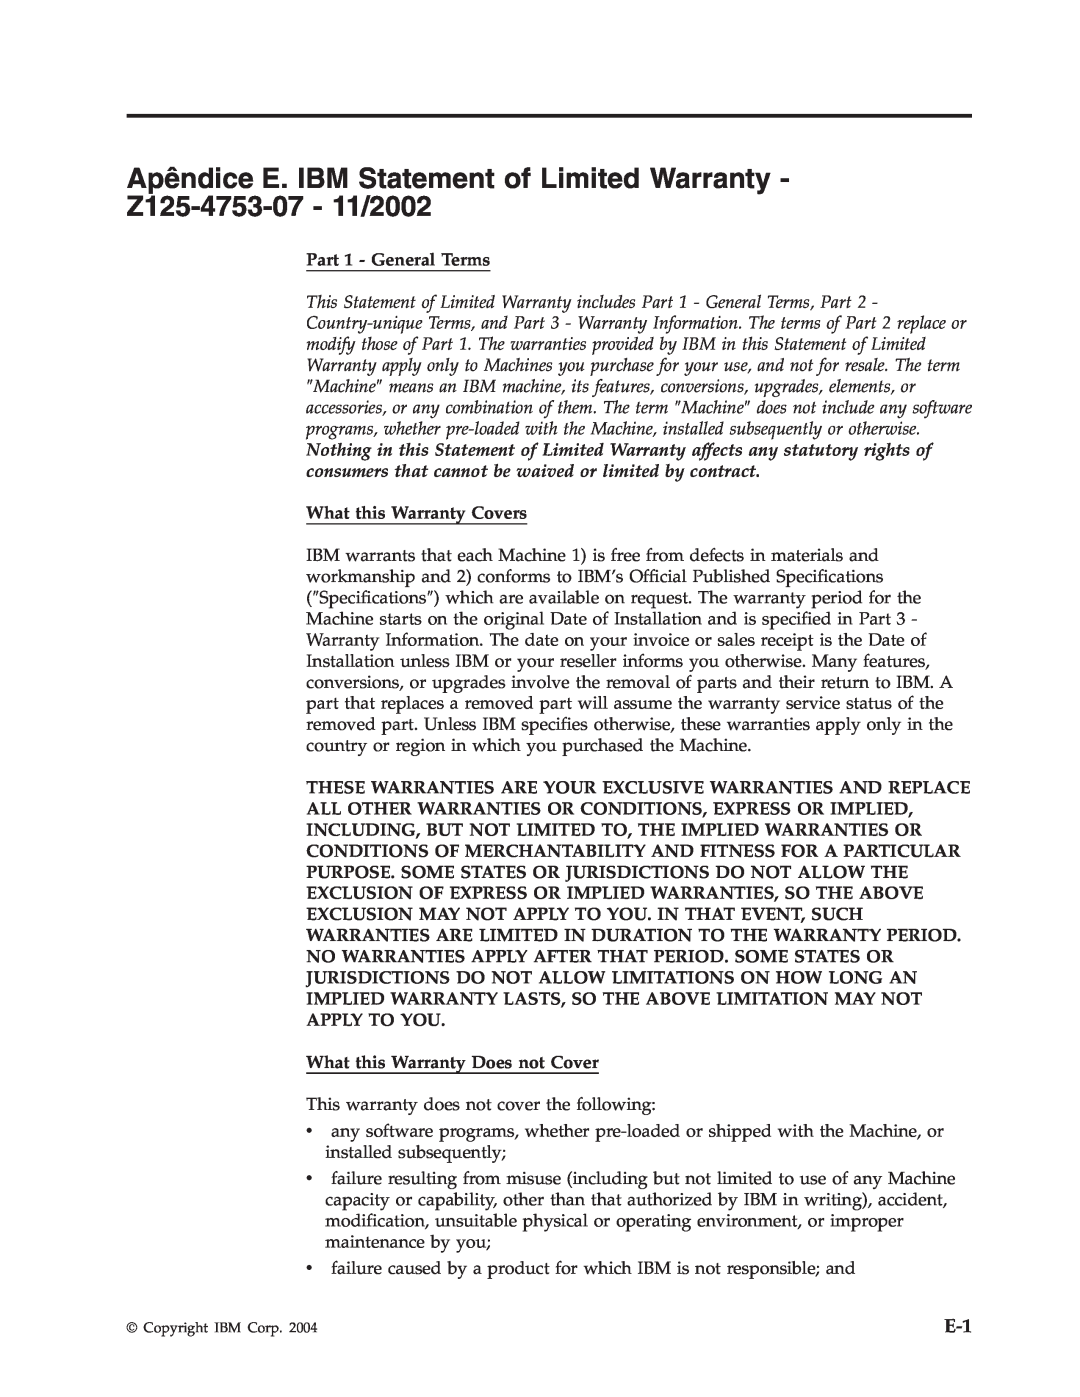 IBM M400 manual Part 1 - General Terms, What this Warranty Covers, What this Warranty Does not Cover 